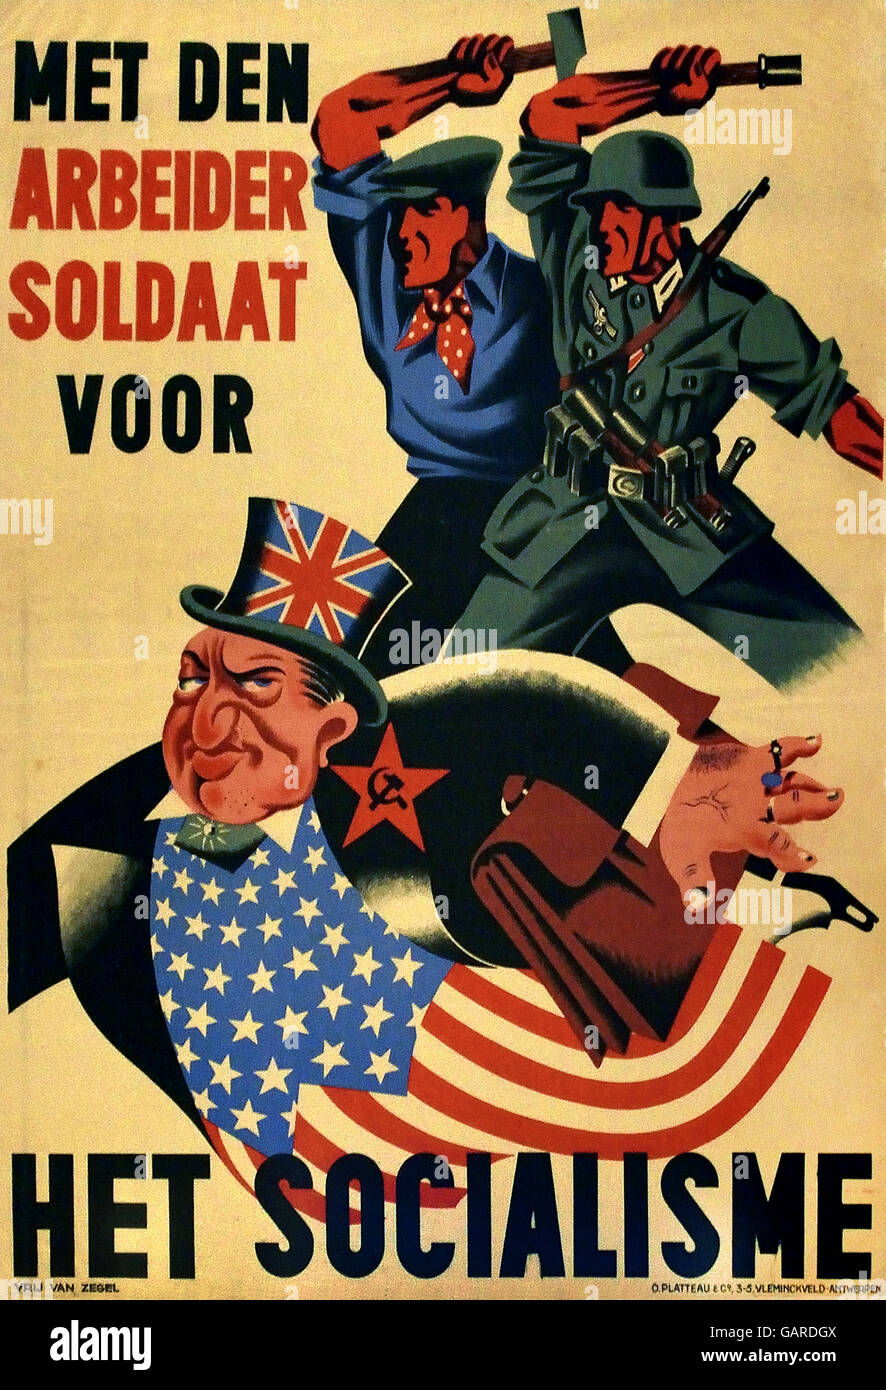 Se reunió den Arbeider soldaat voor het Socialisme - el trabajador soldado para el Socialismo Nacional cartel propagandístico socialista en Bélgica 1943 / 44 Belga Nazi Foto de stock